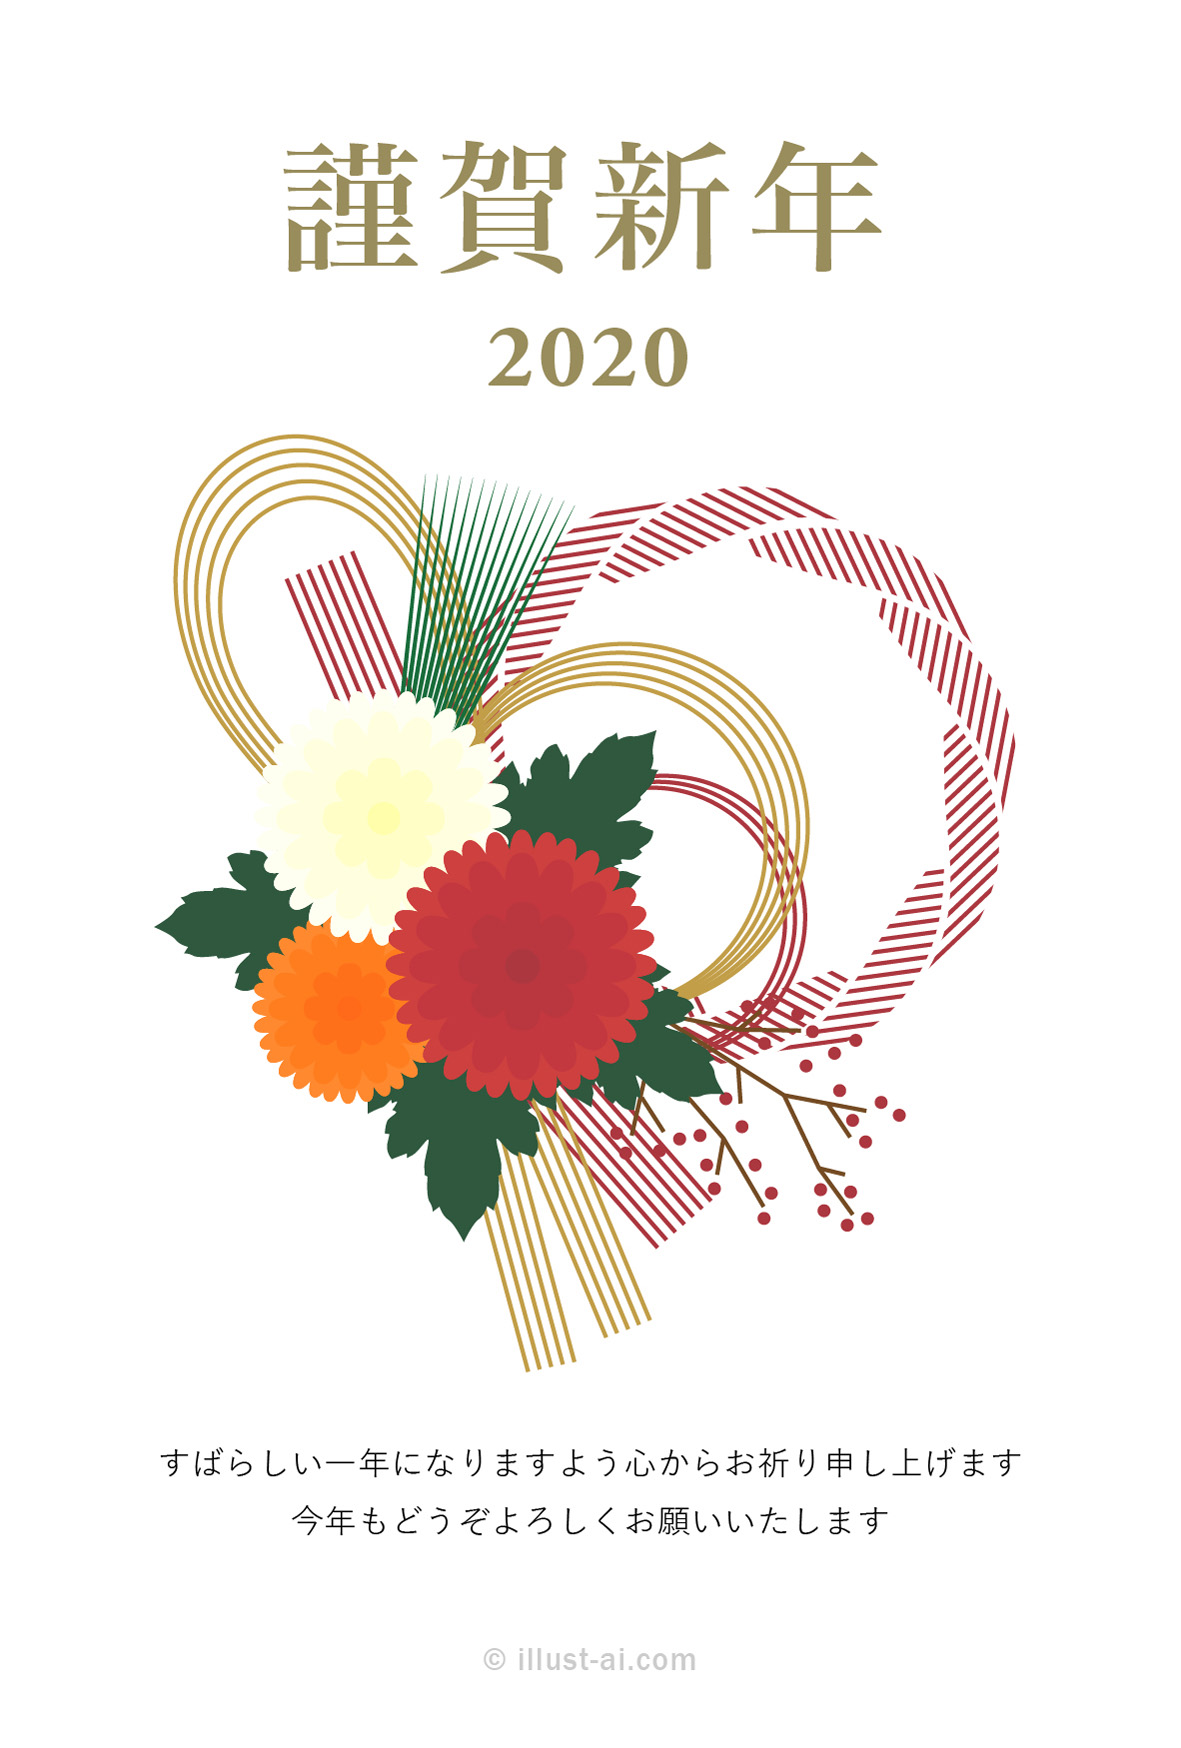 年賀状 子年 三色の菊の花とオシャレな赤いしめ縄の年賀状 年賀状2020無料イラスト素材集